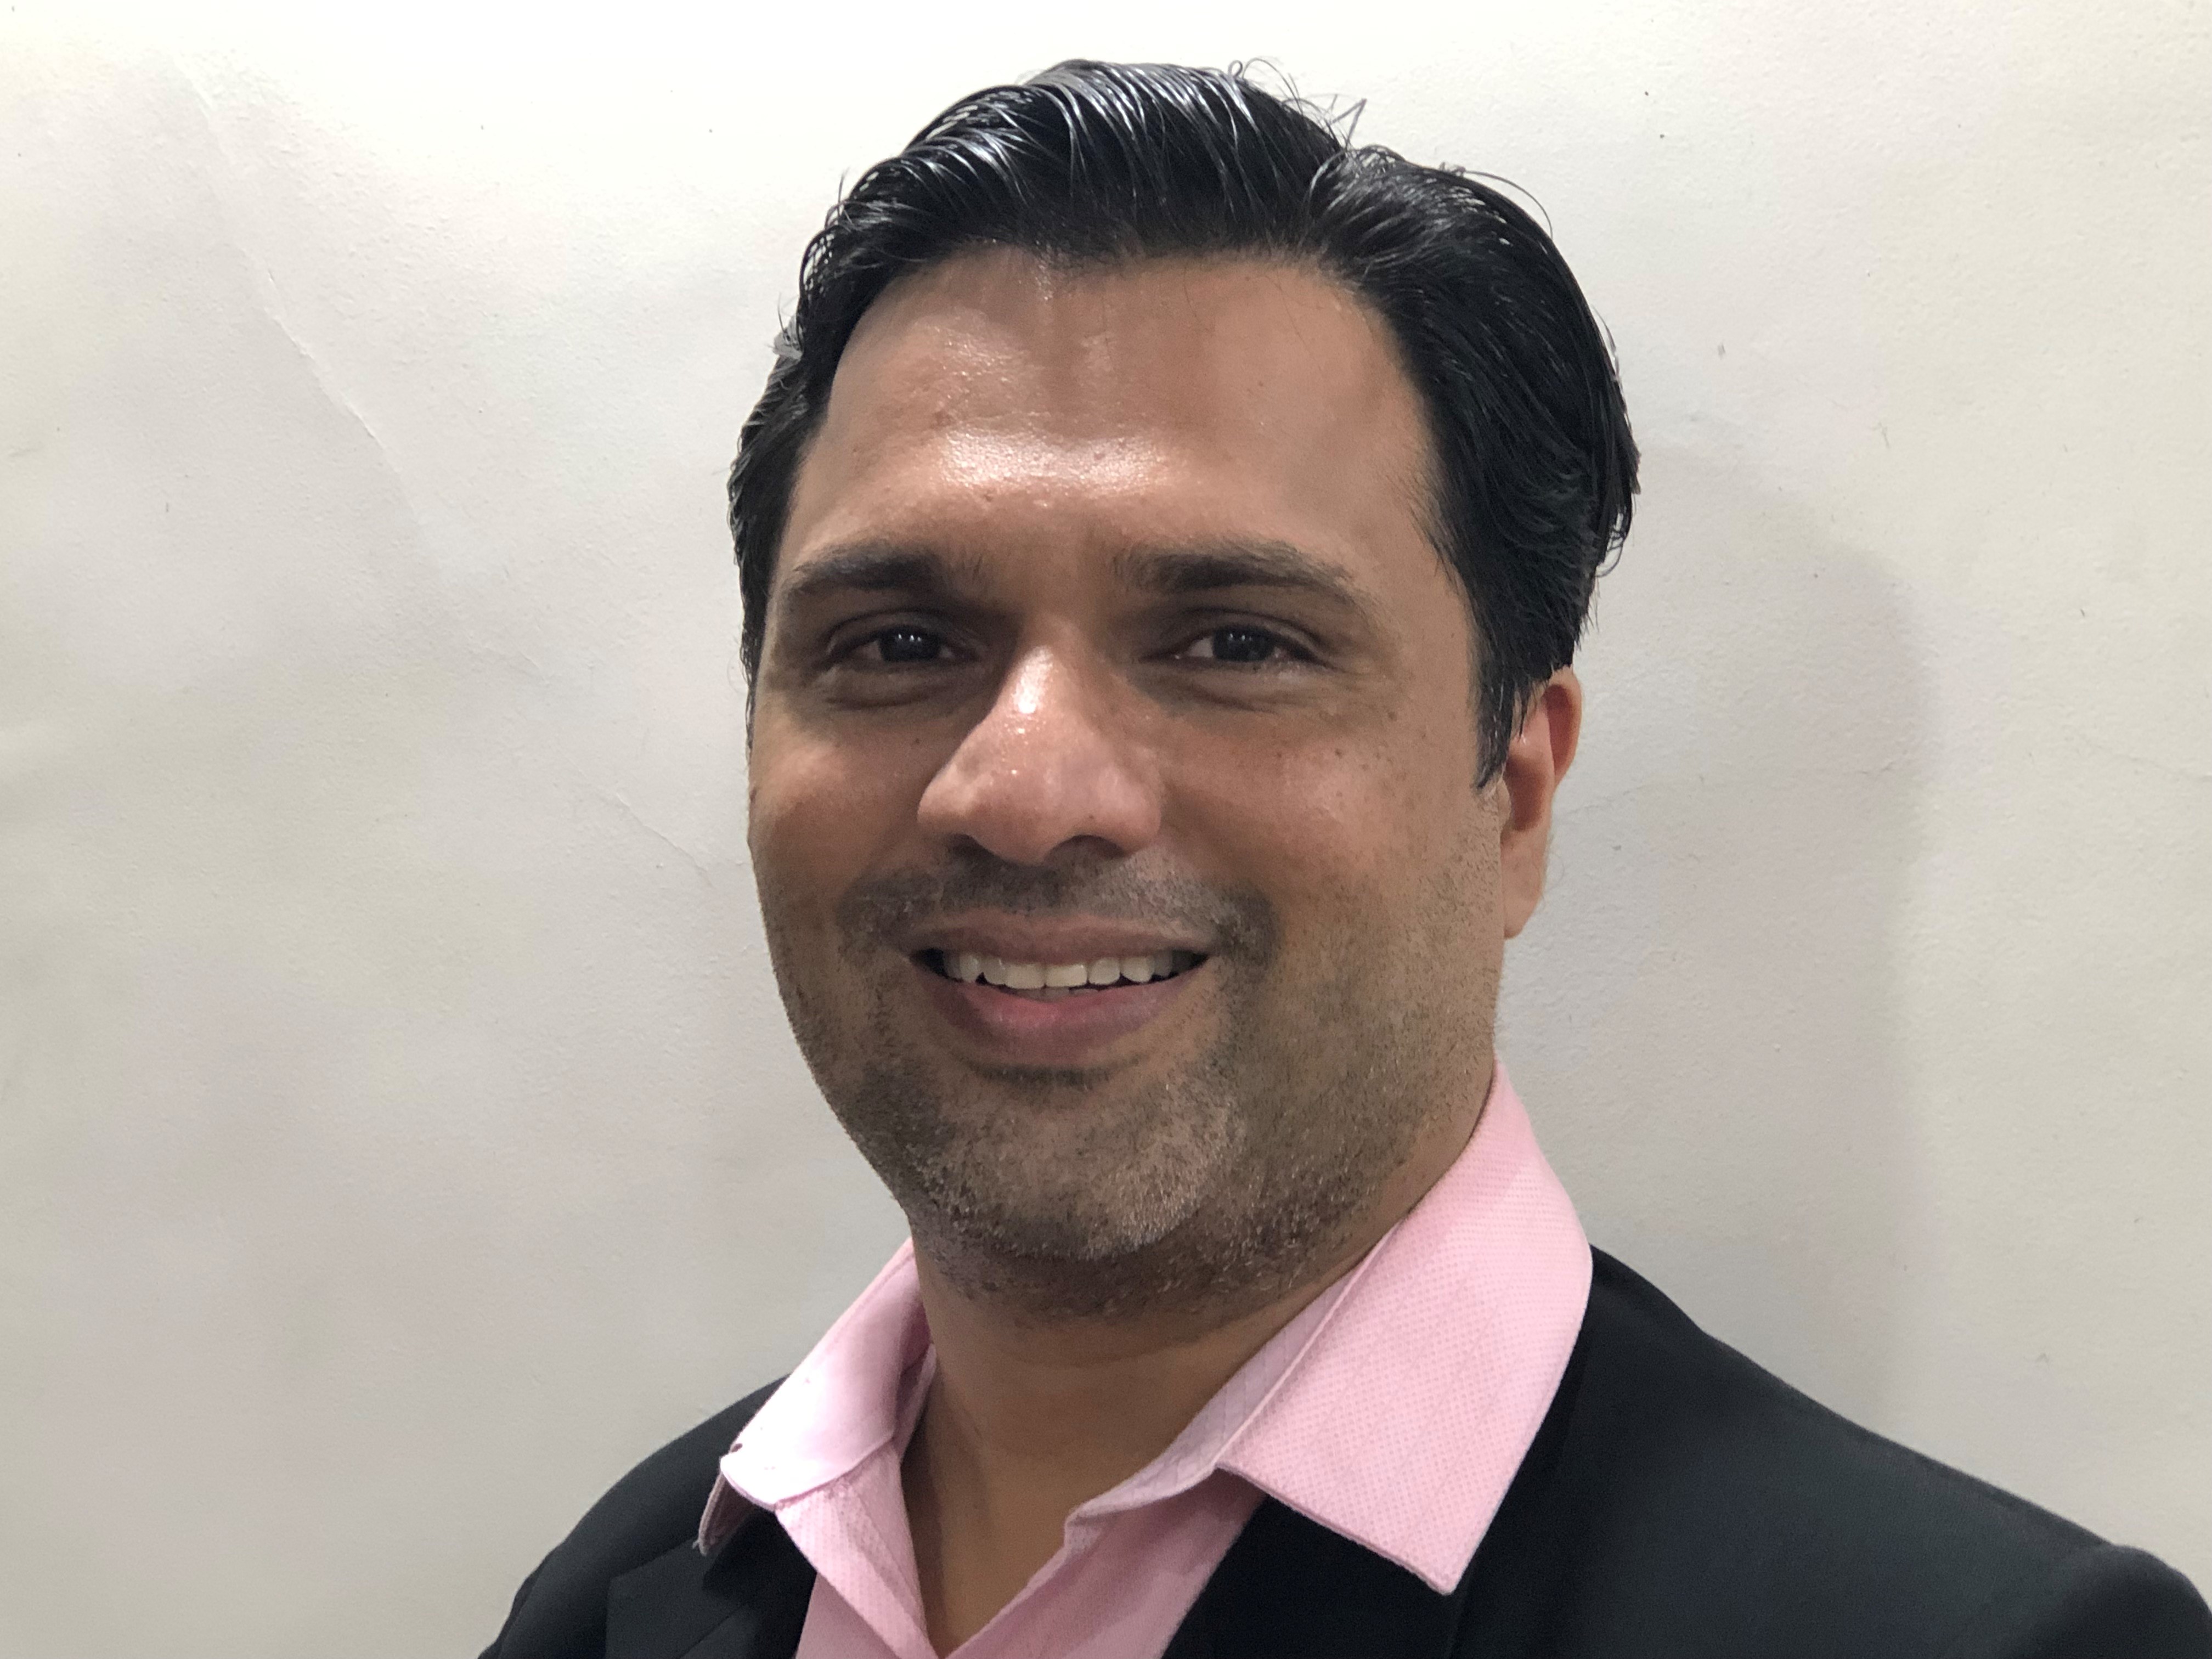 Headshot of Abhishek Patel